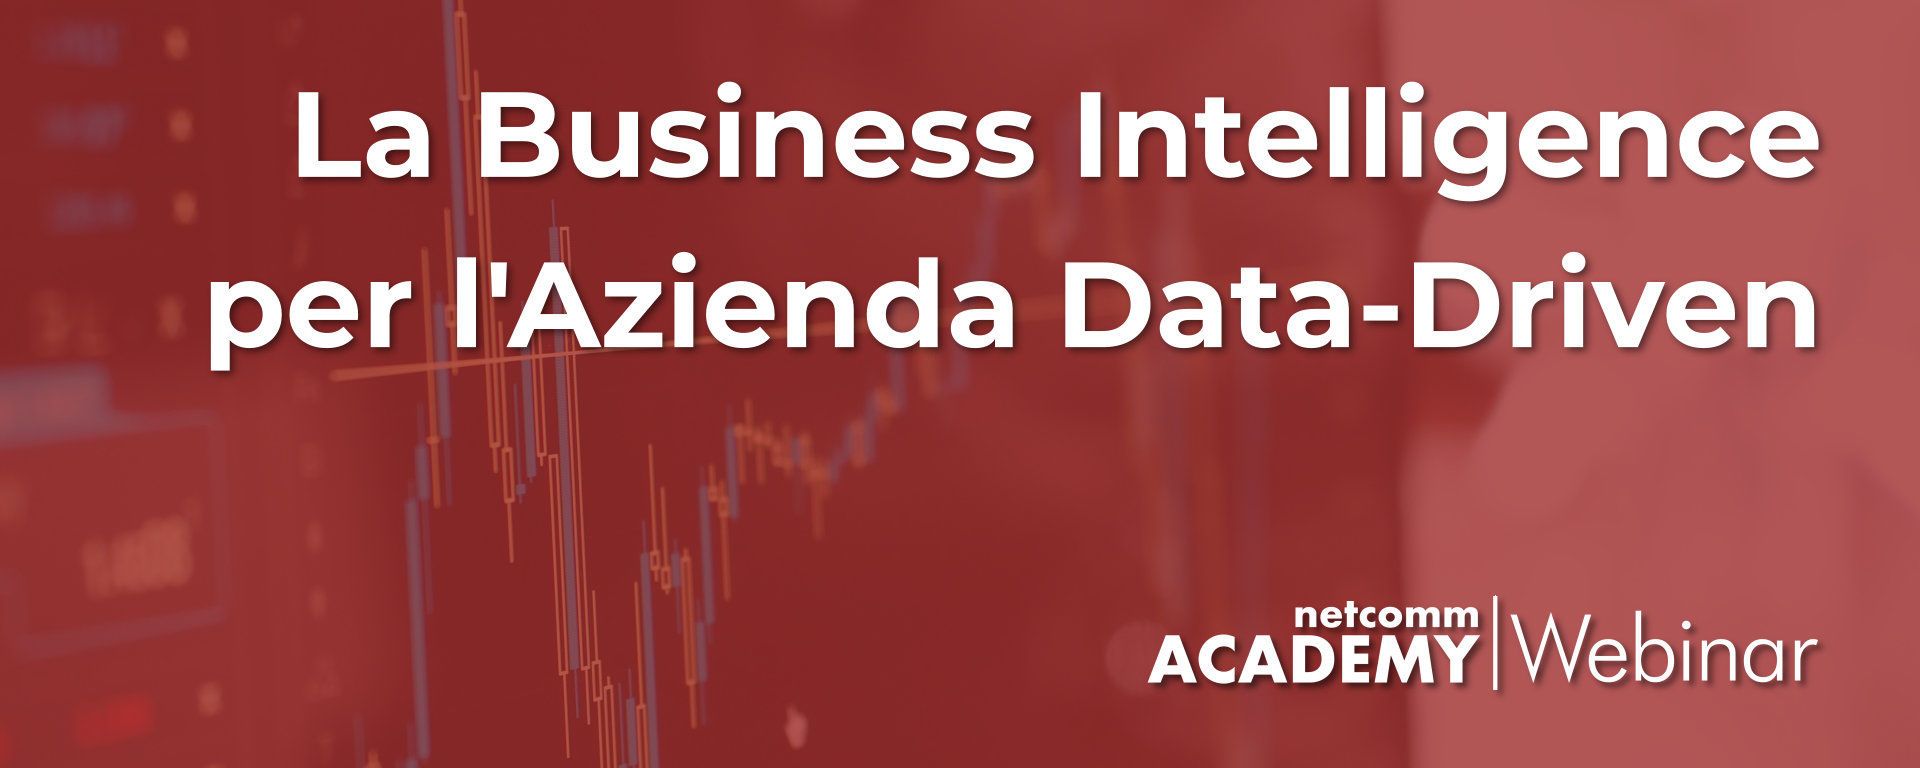 La Business Intelligence per l’Azienda Data-Driven